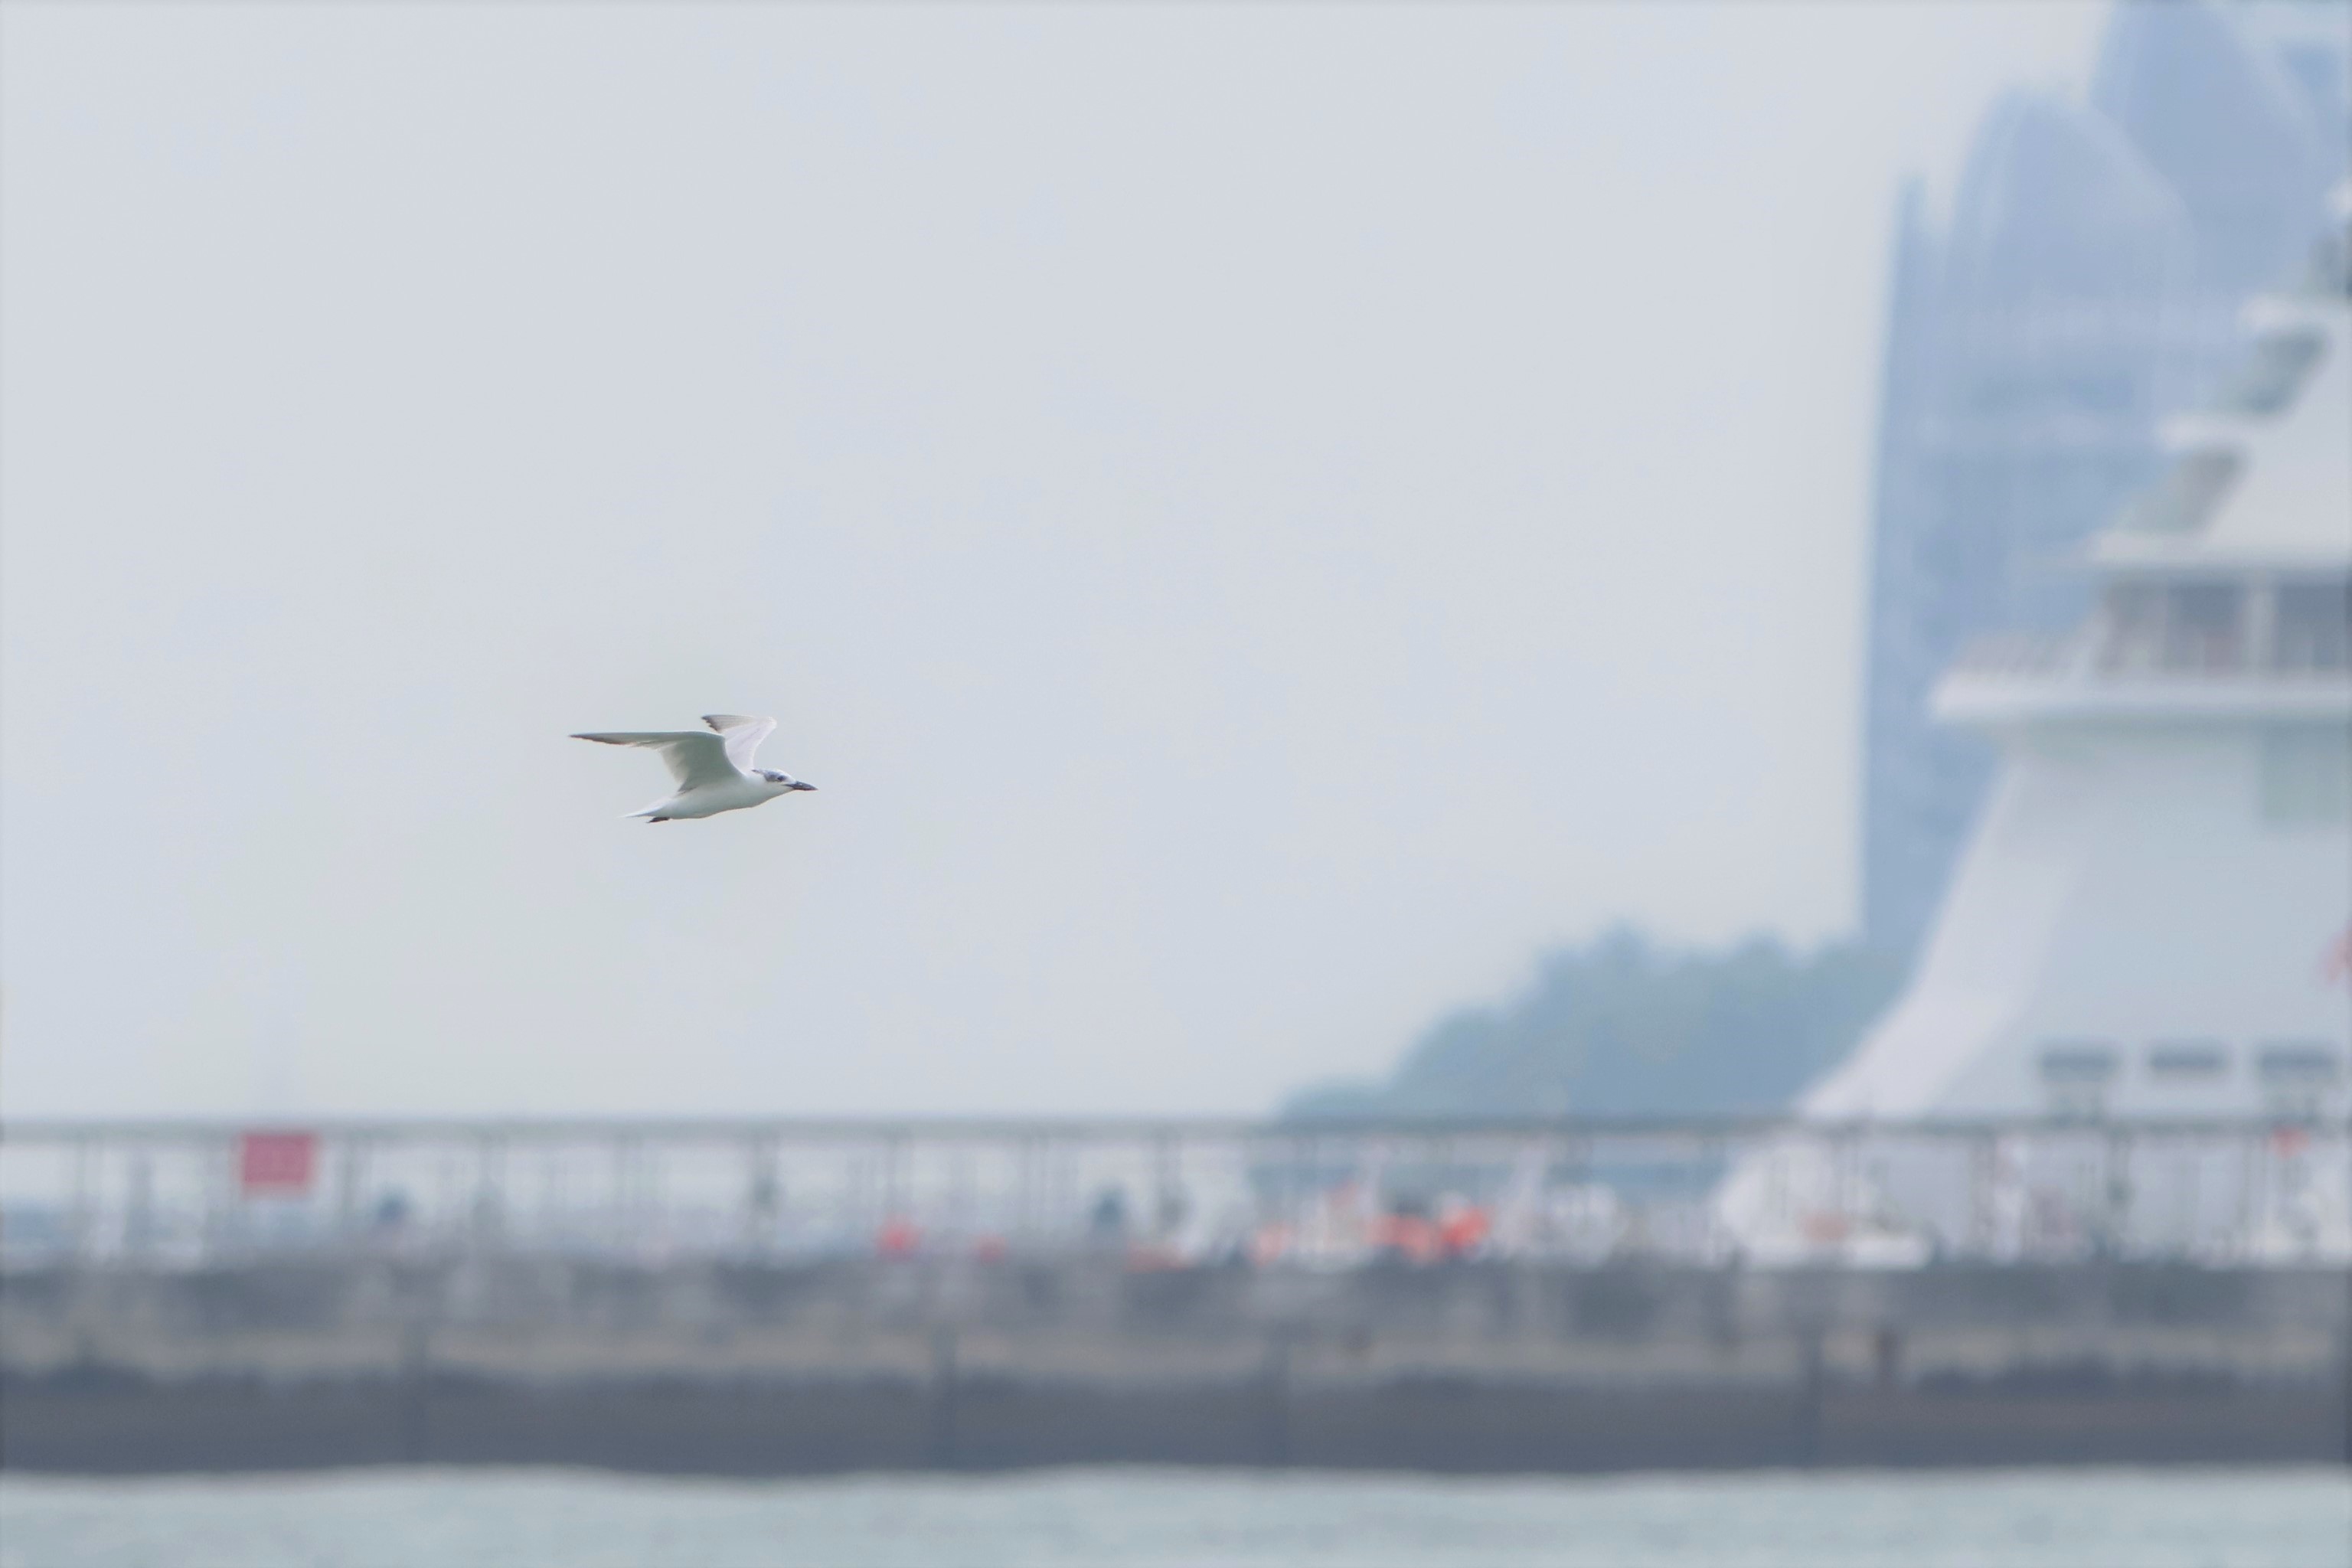 Gull-billed Tern at Marina Barrage on 25 Sep 2022. Photo credit: Fadzrun Adnan